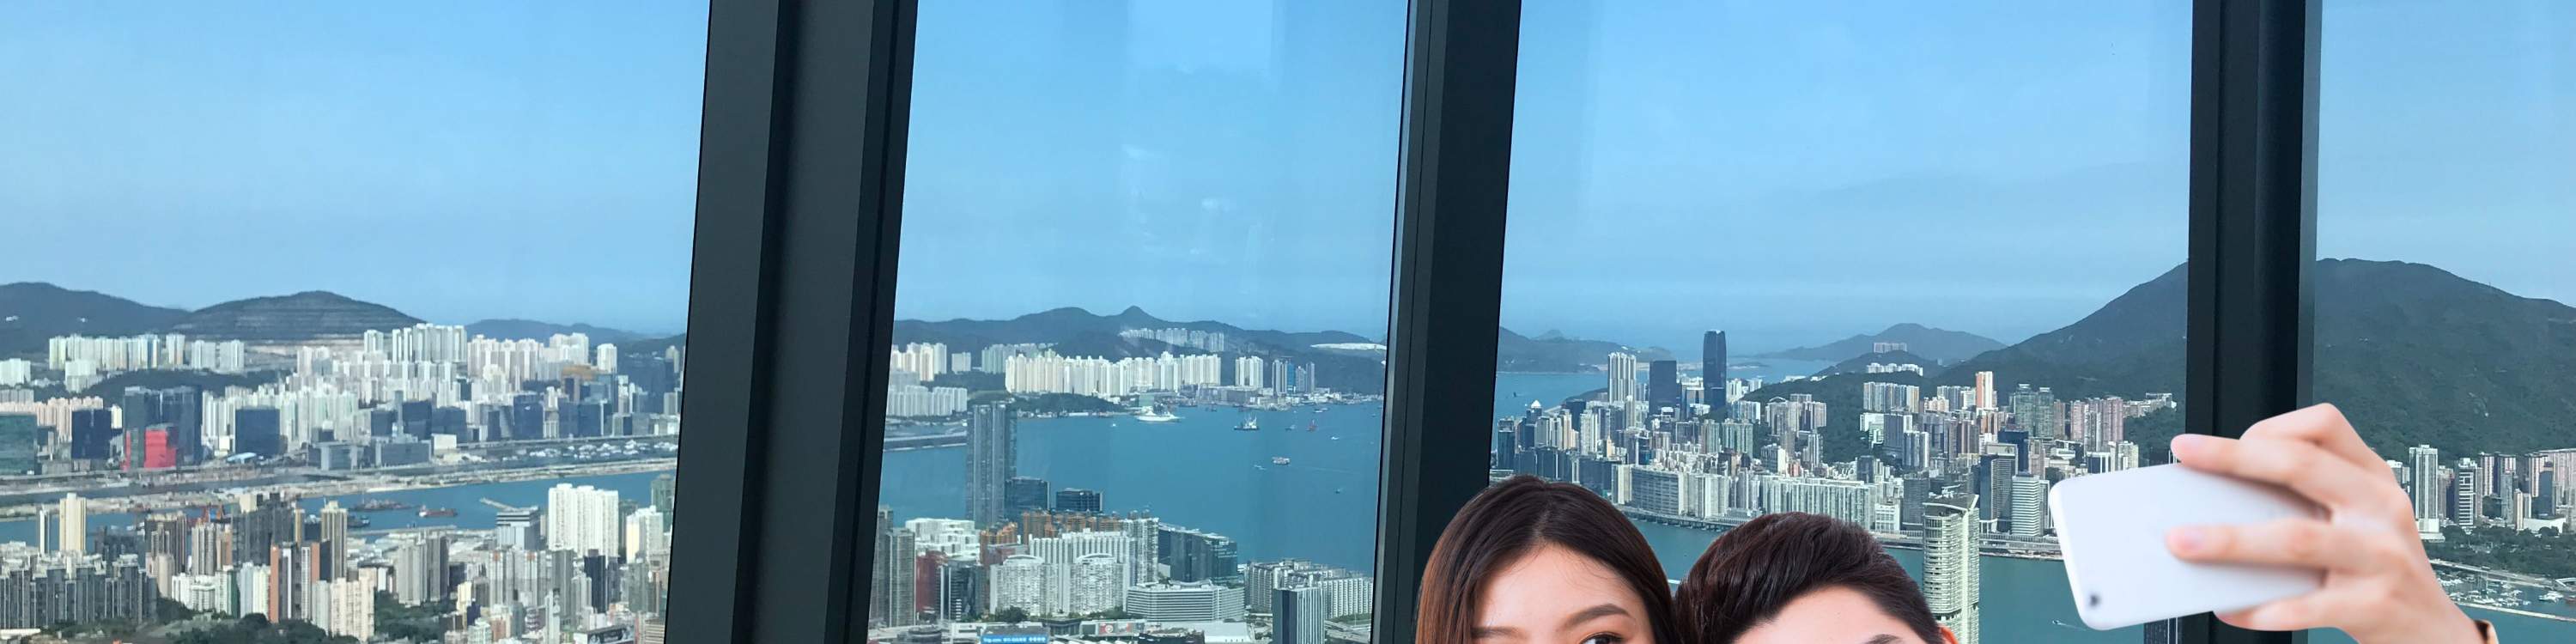 Sky100 Hong Kong Observation Deck Ticket - Klook